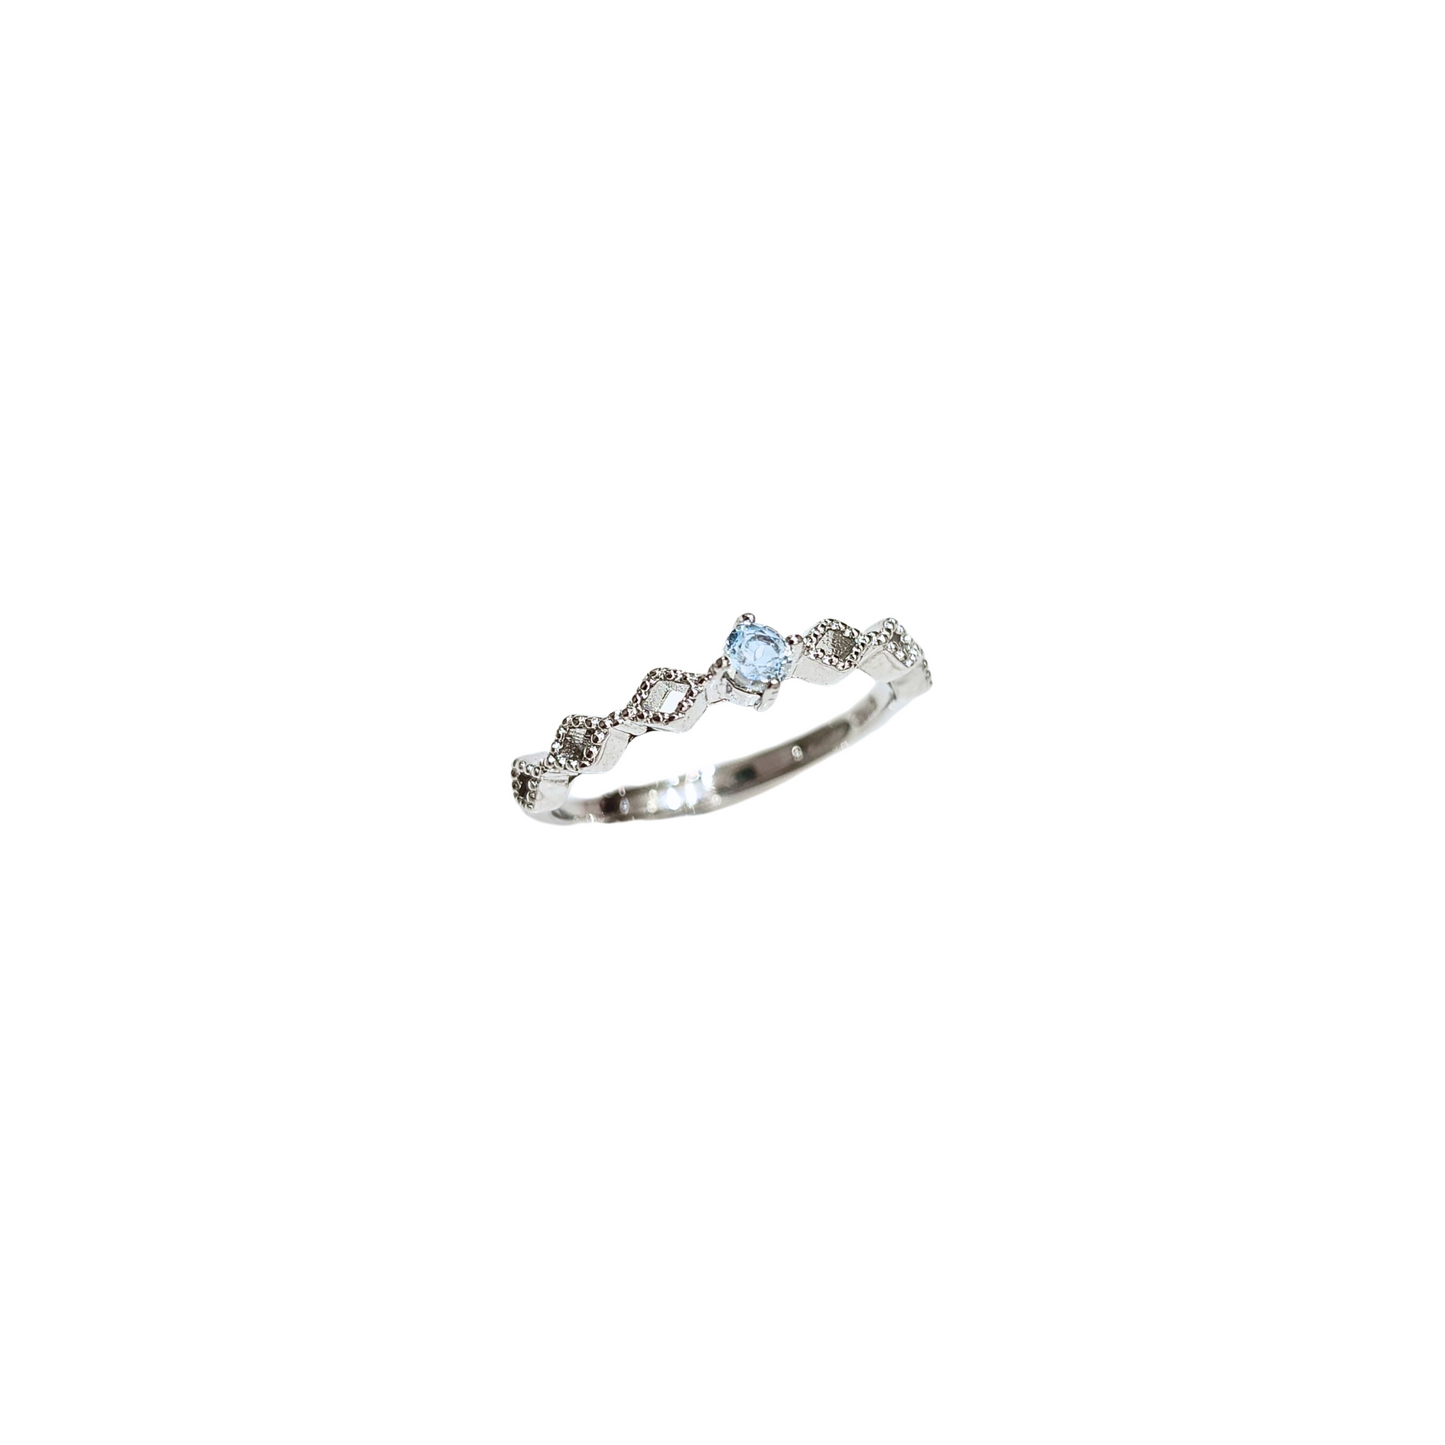 Sky Blue Topaz Diamond-Shaped Flower Ring